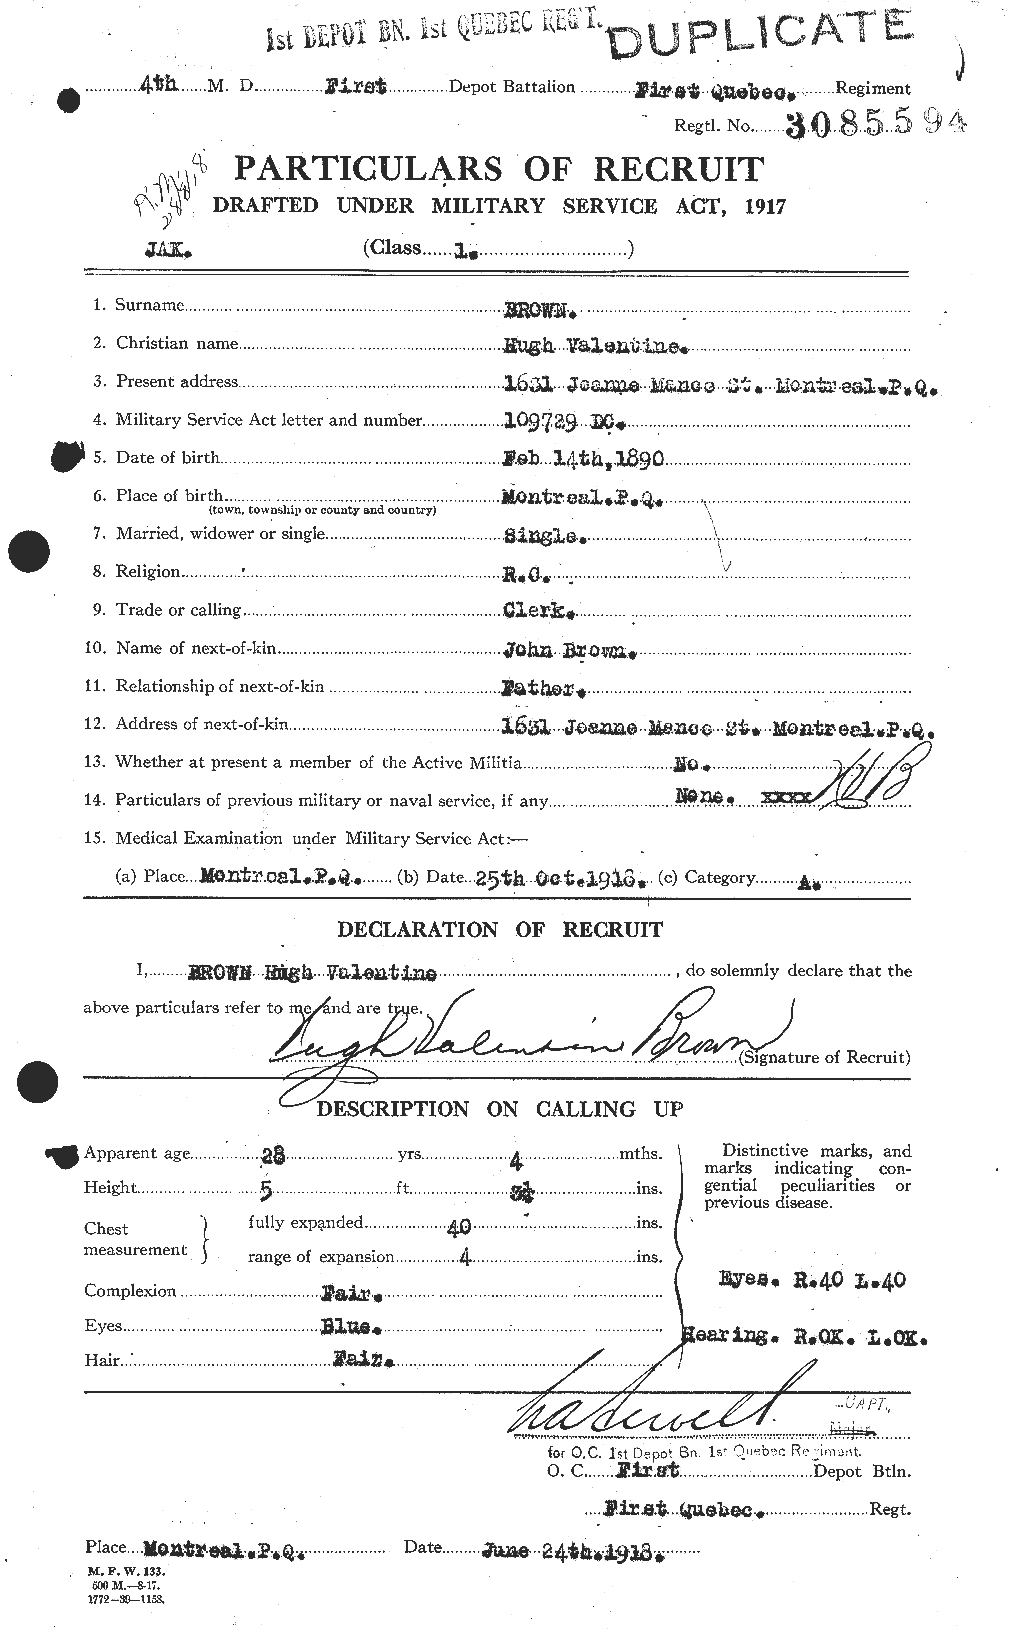 Dossiers du Personnel de la Première Guerre mondiale - CEC 265654a